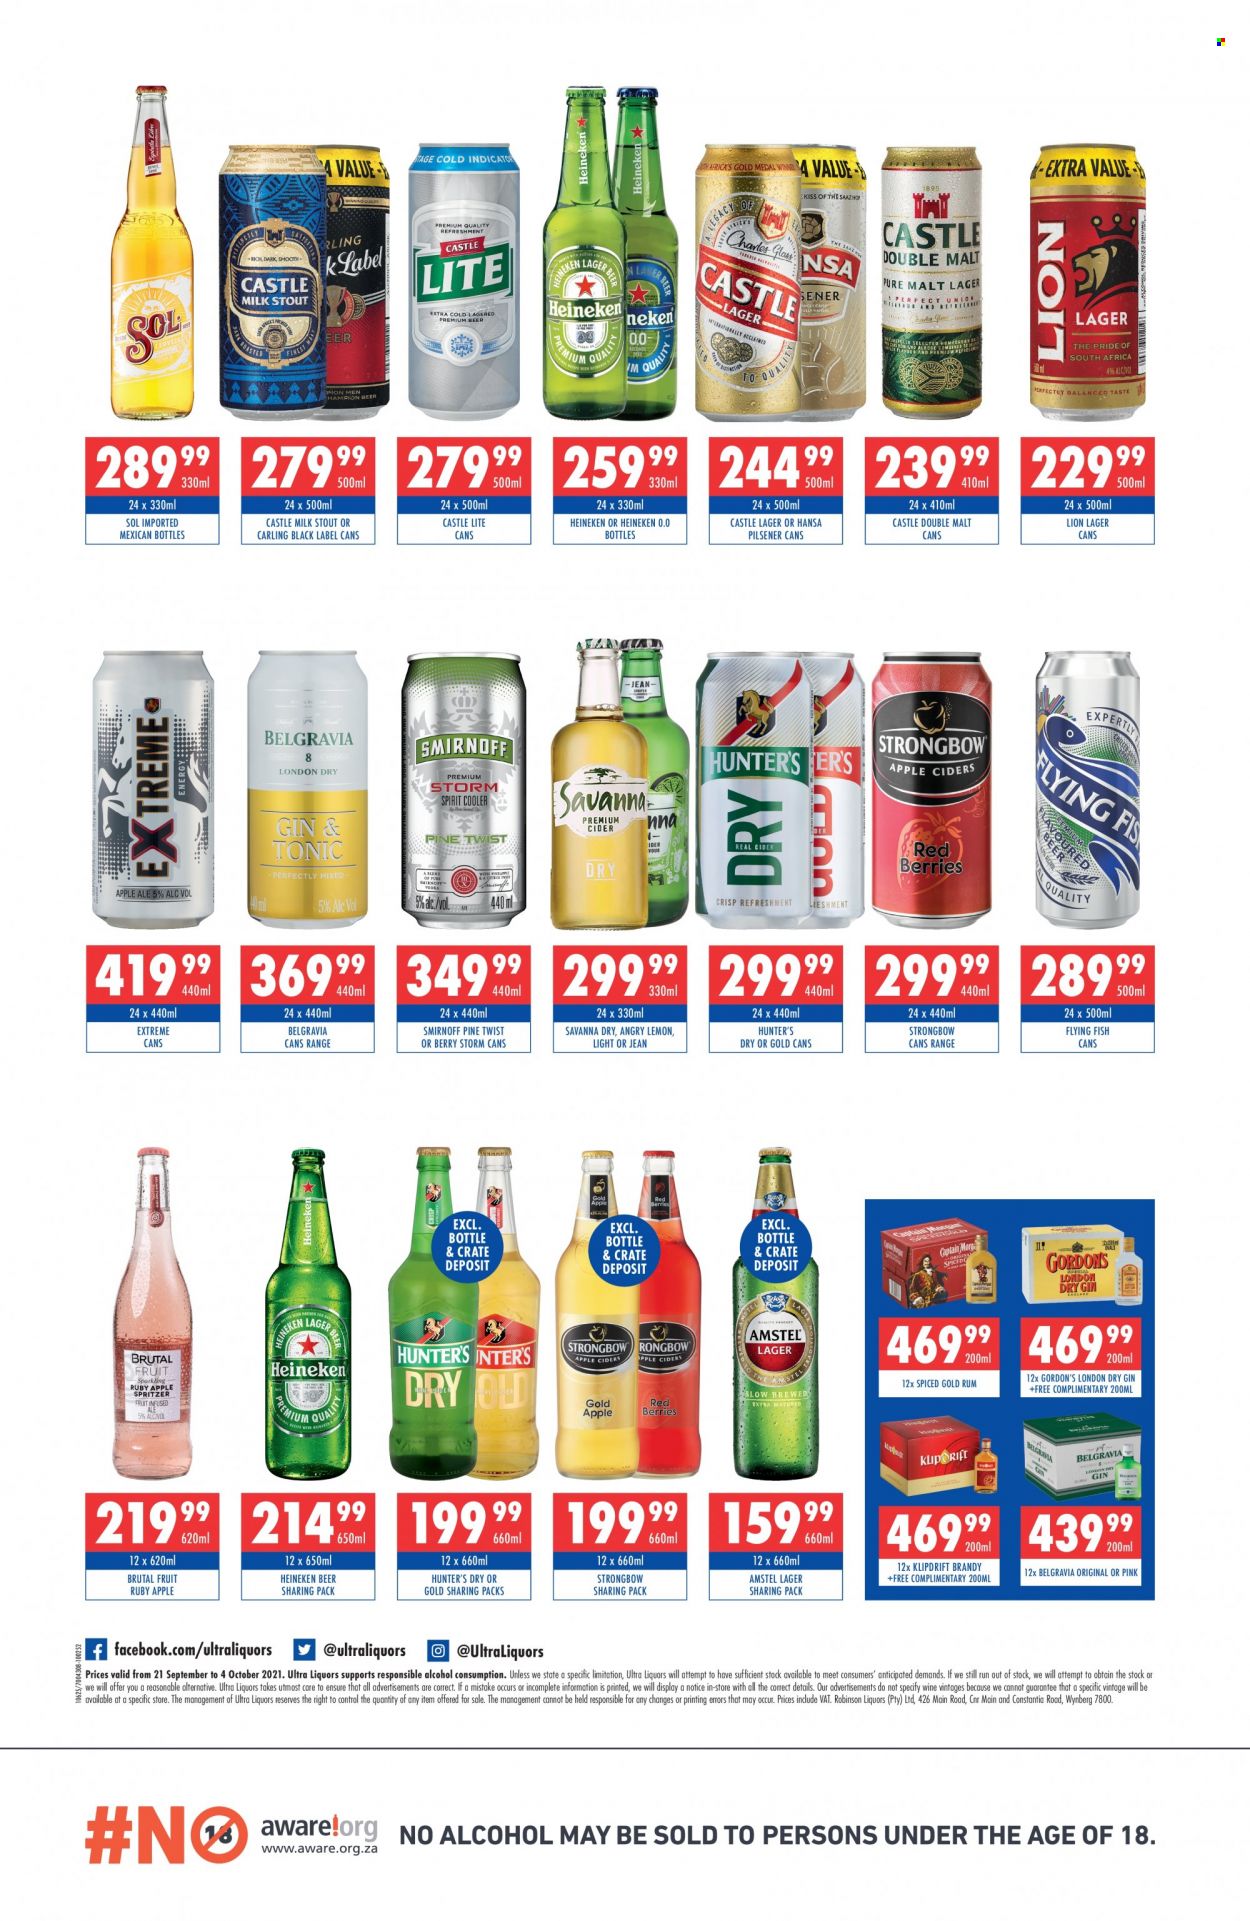 Ultra Liquors specials - 09.21.2021 - 10.04.2021. 